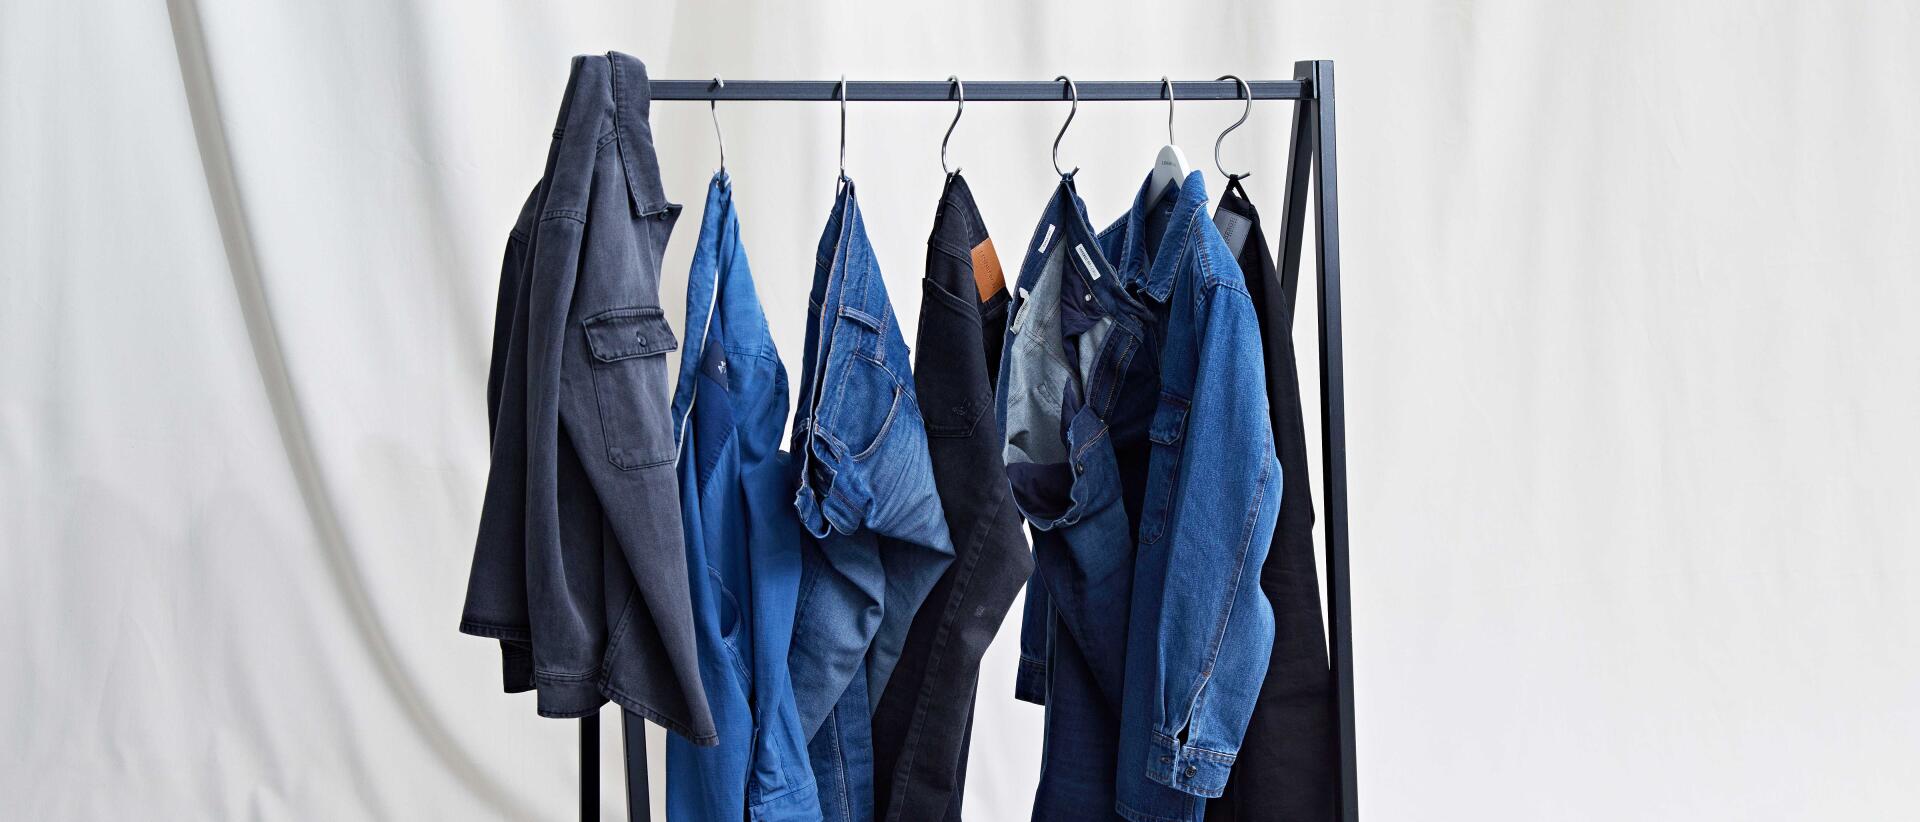 Sådan skal du vaske jeans | Tøjpleje | Tøjeksperten